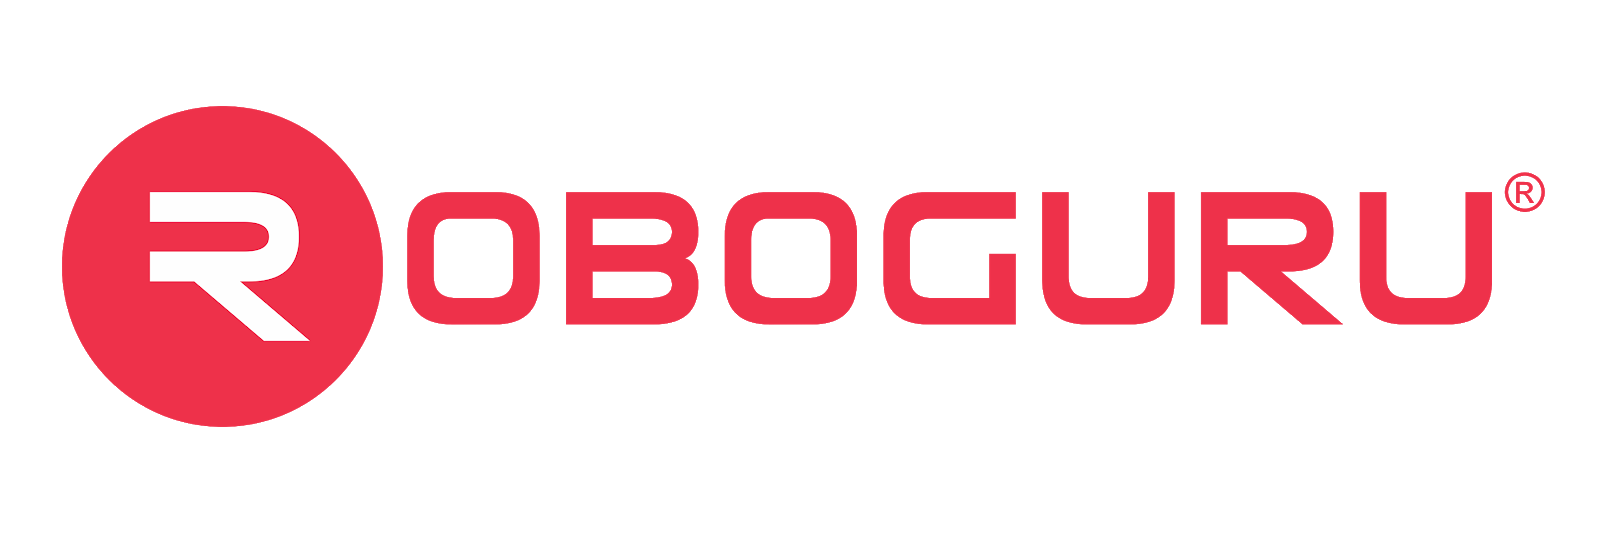 RoboGuru (Jay Robotix Learning India Pvt Ltd) logo